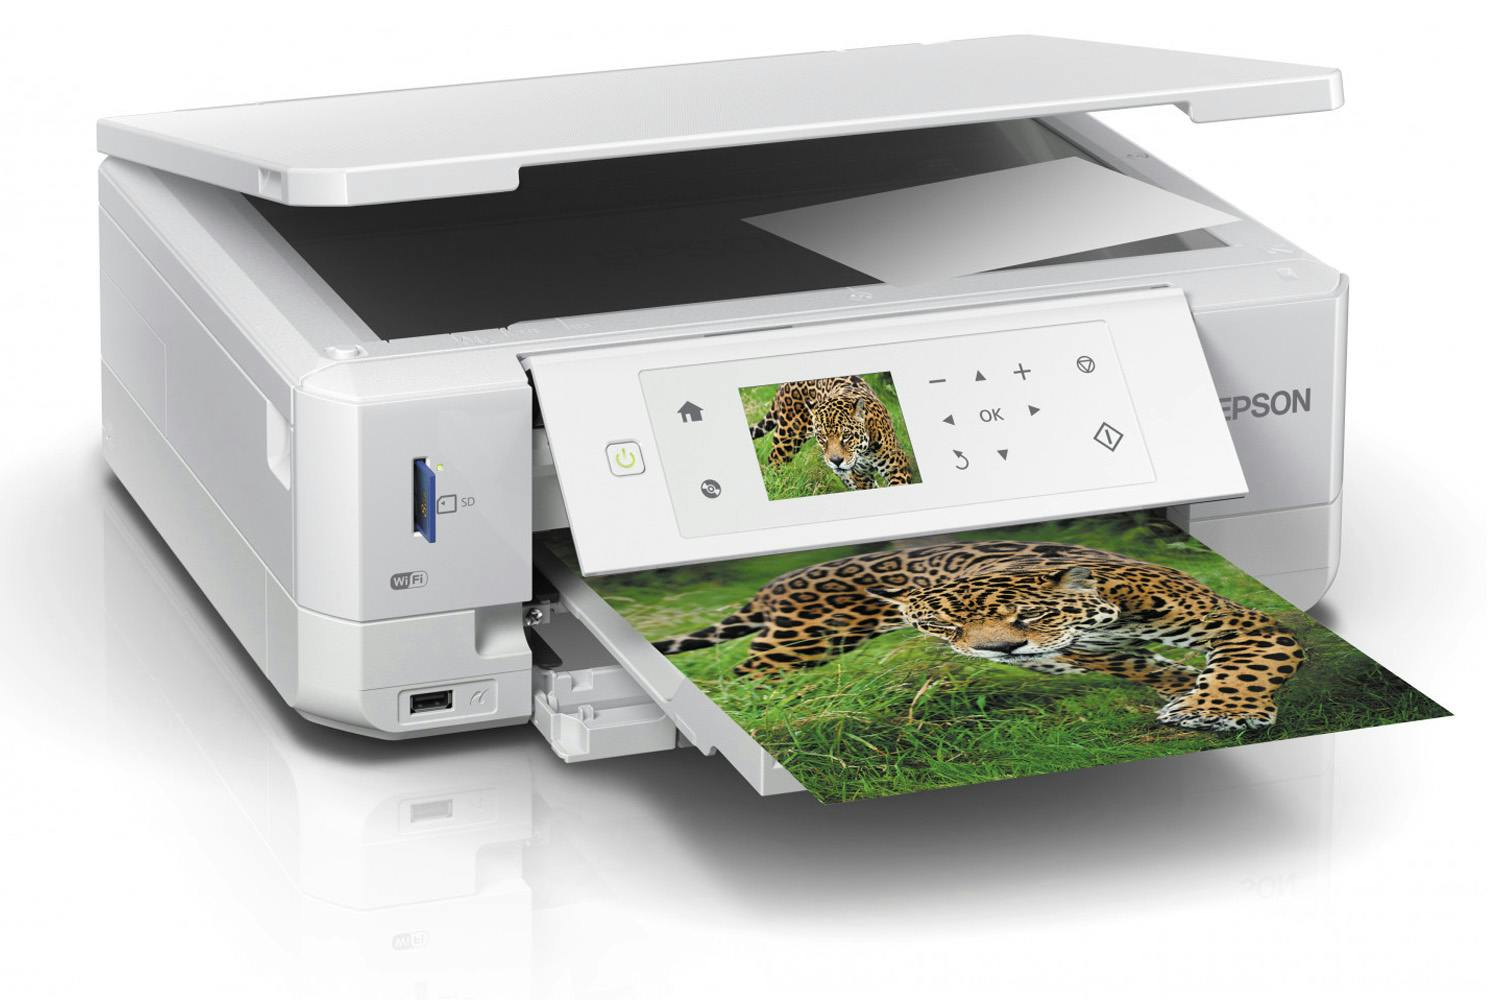  Epson  Expression Premium XP 645 Inkjet Printer  White  